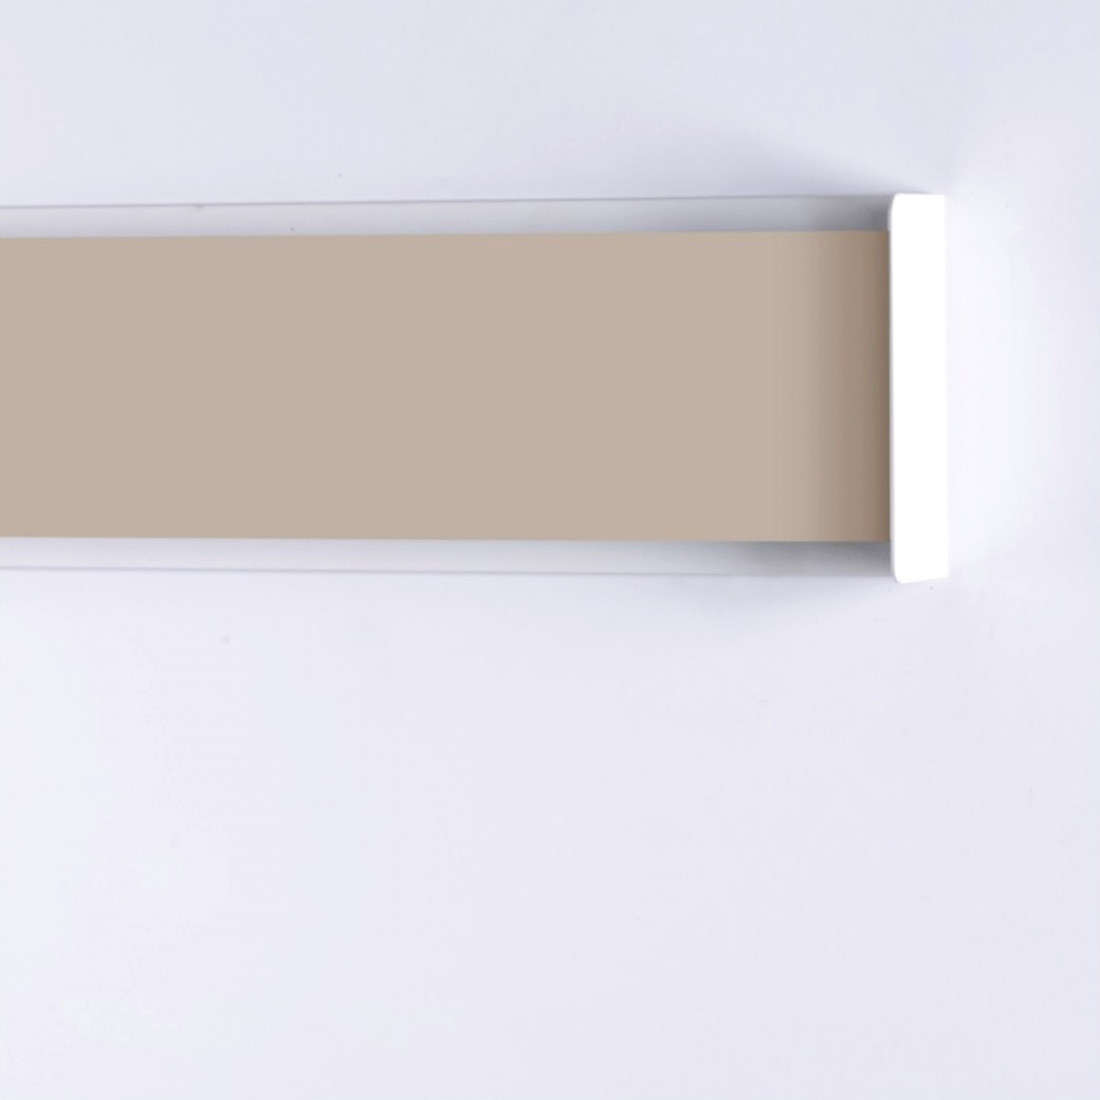 CO-ABBRACCIO 770 21A 12W LED 1600LM biemission métal rectangulaire plat moderne applique murale intérieure